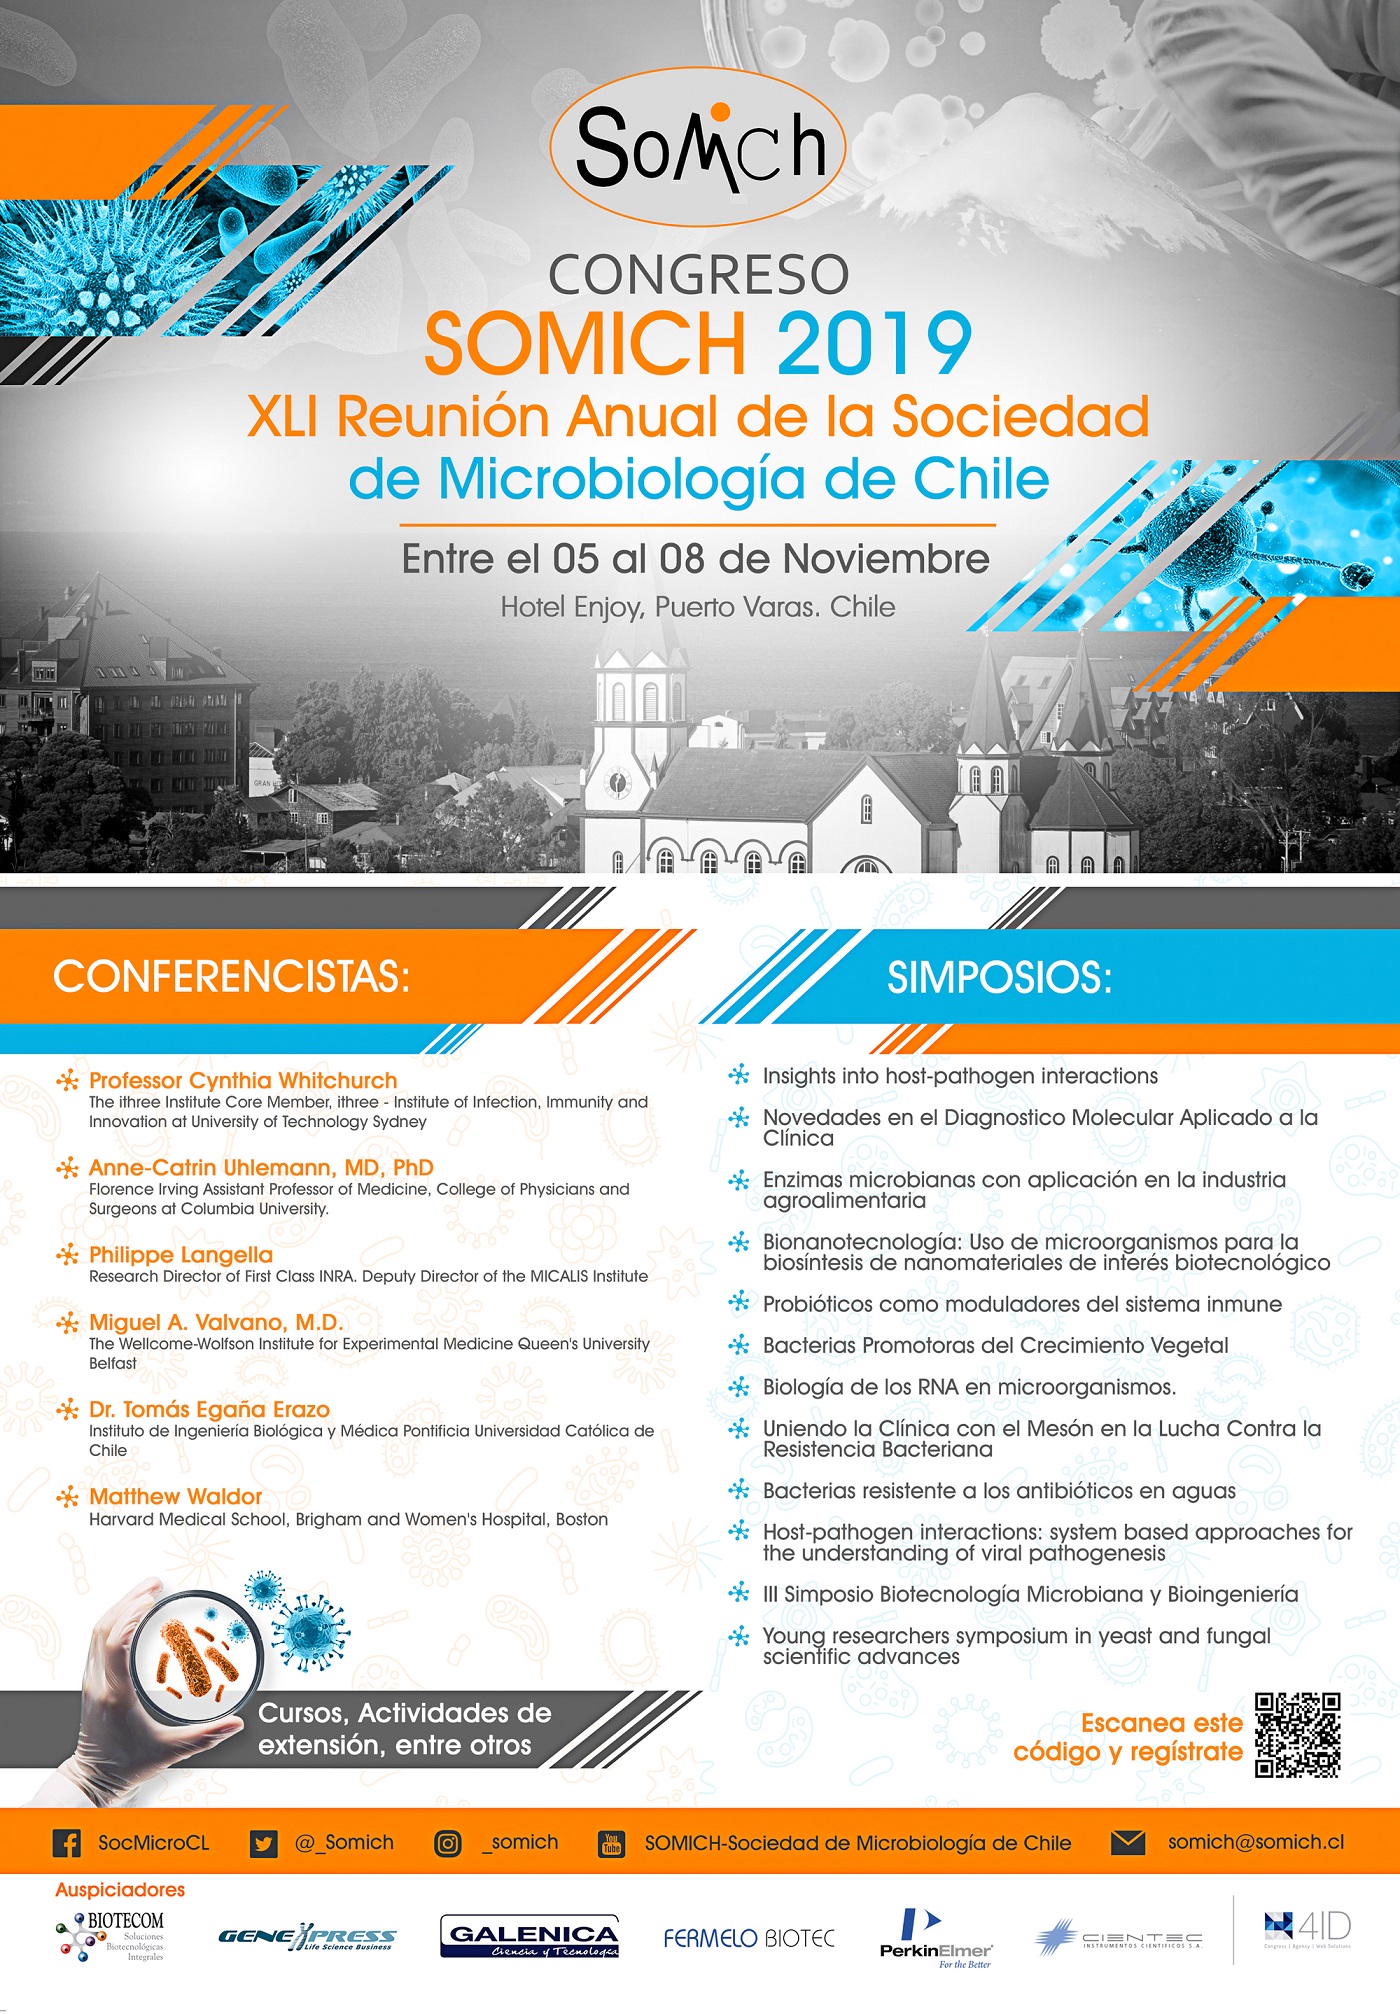 [Congreso] SOMICH 2019 – XLI Reunión Anual de la Sociedad de Microbiología de Chile